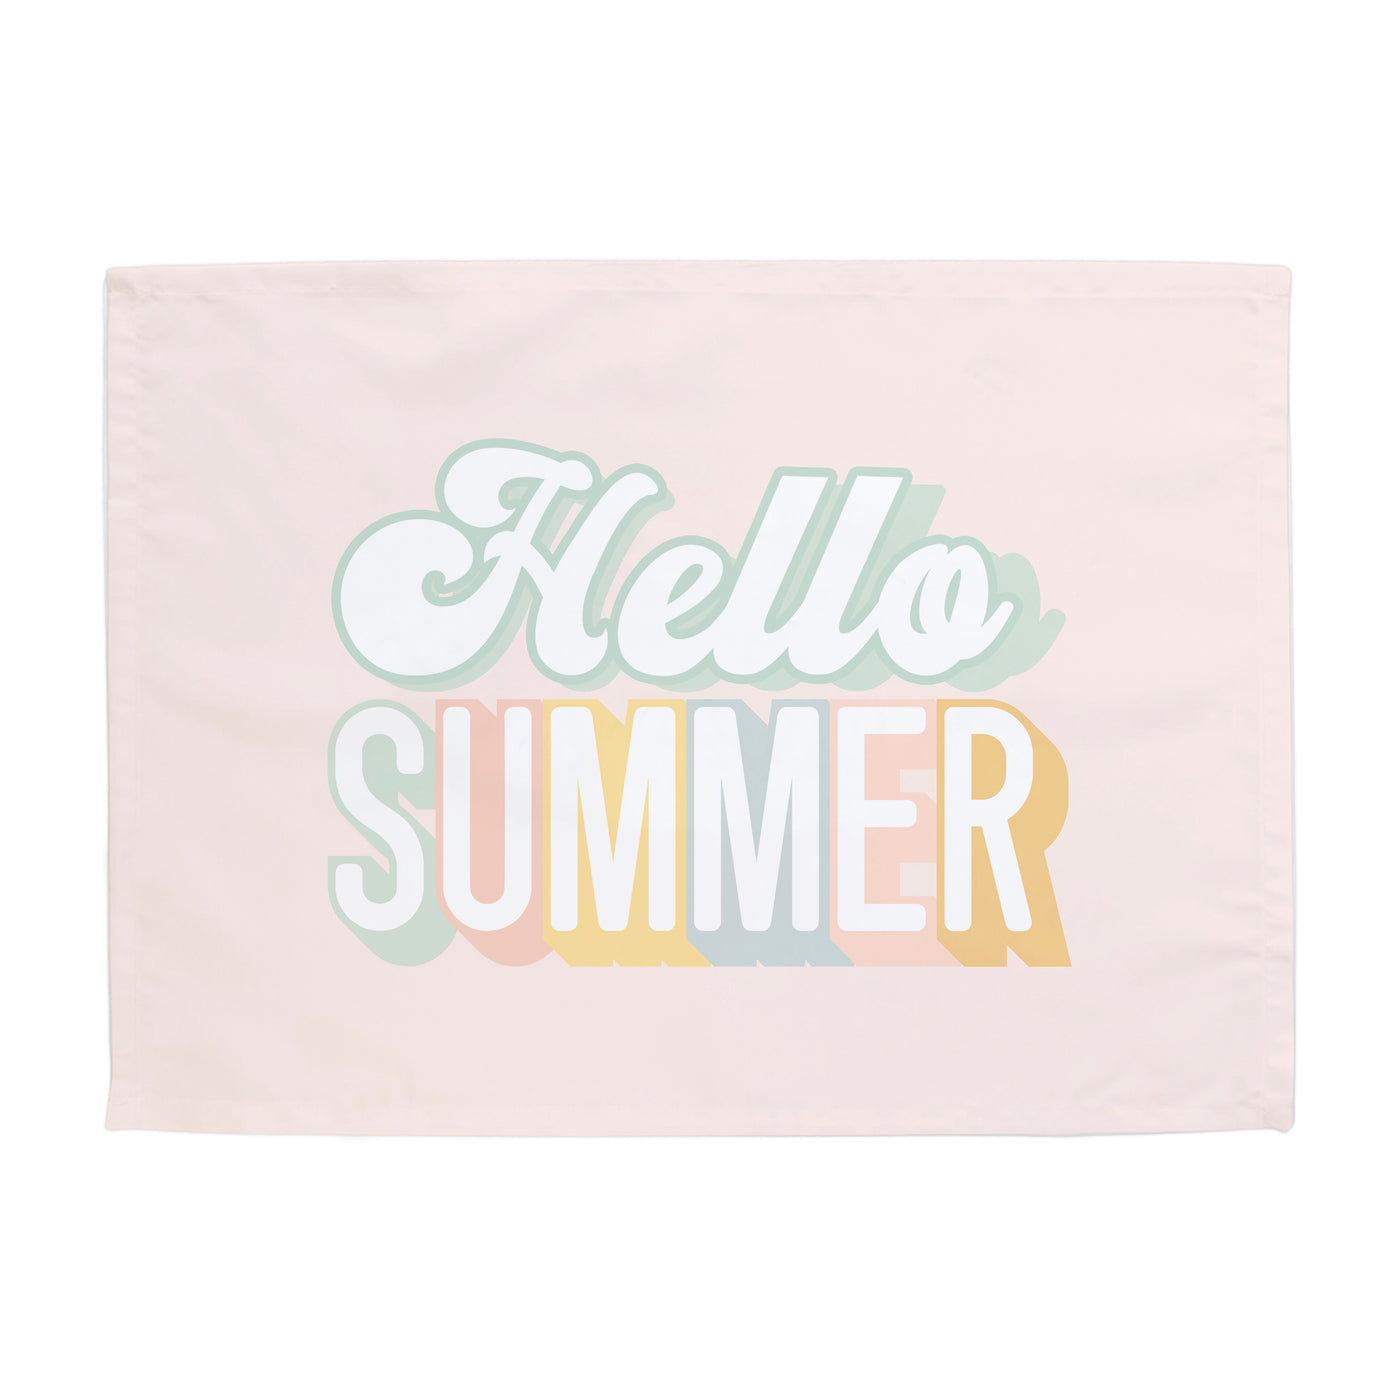 Hello Summer Banner